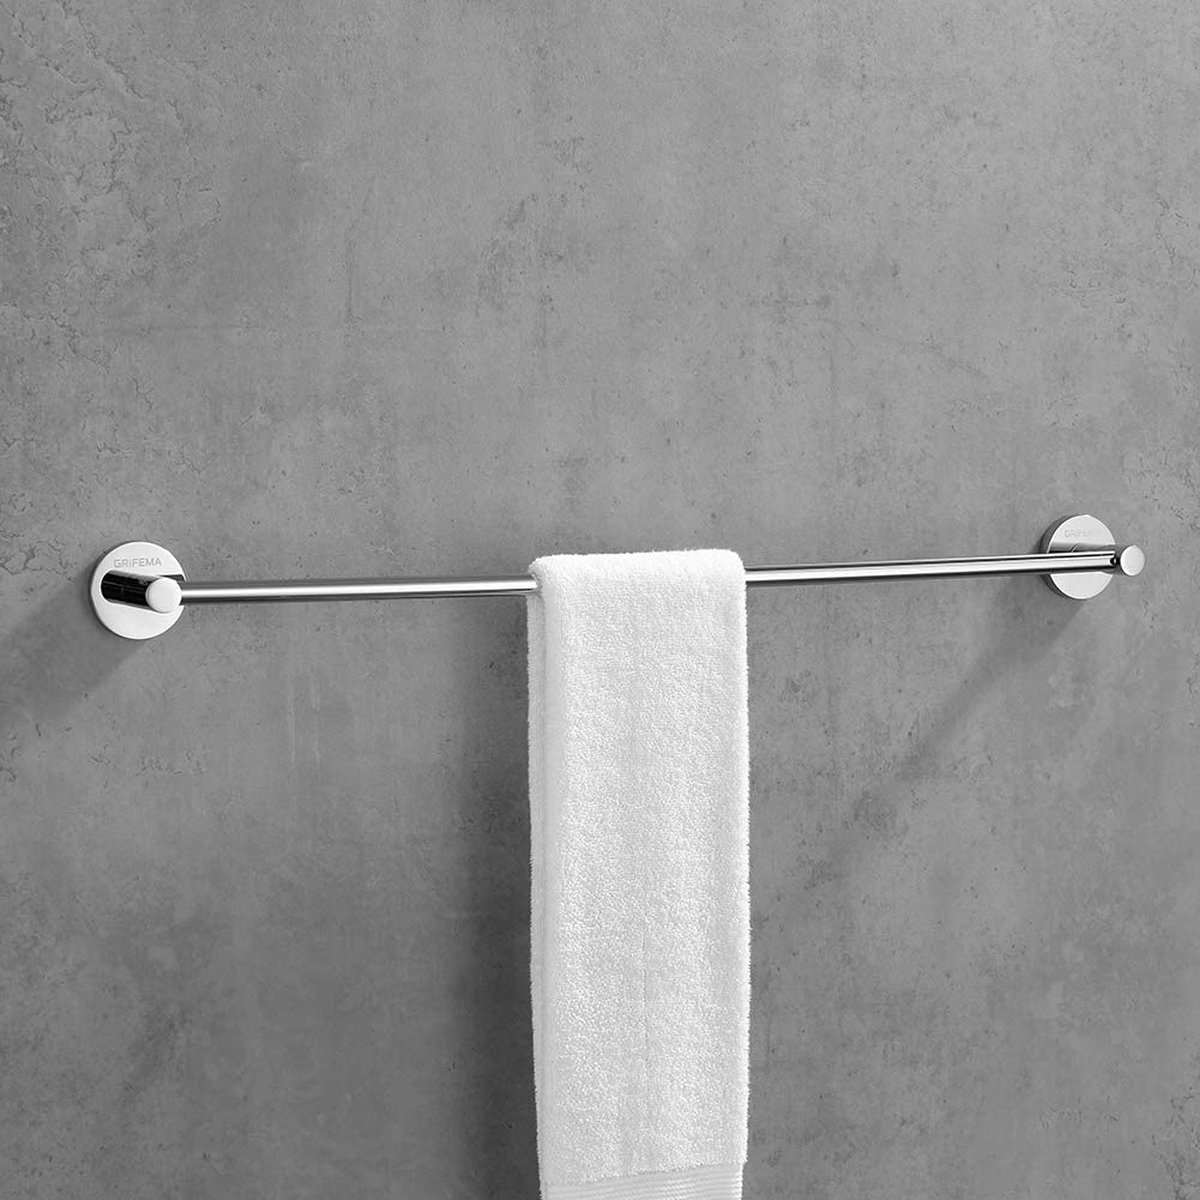 Handdoekenrek – Towels Rack – handdoekenstandaard - Handdoekhouder